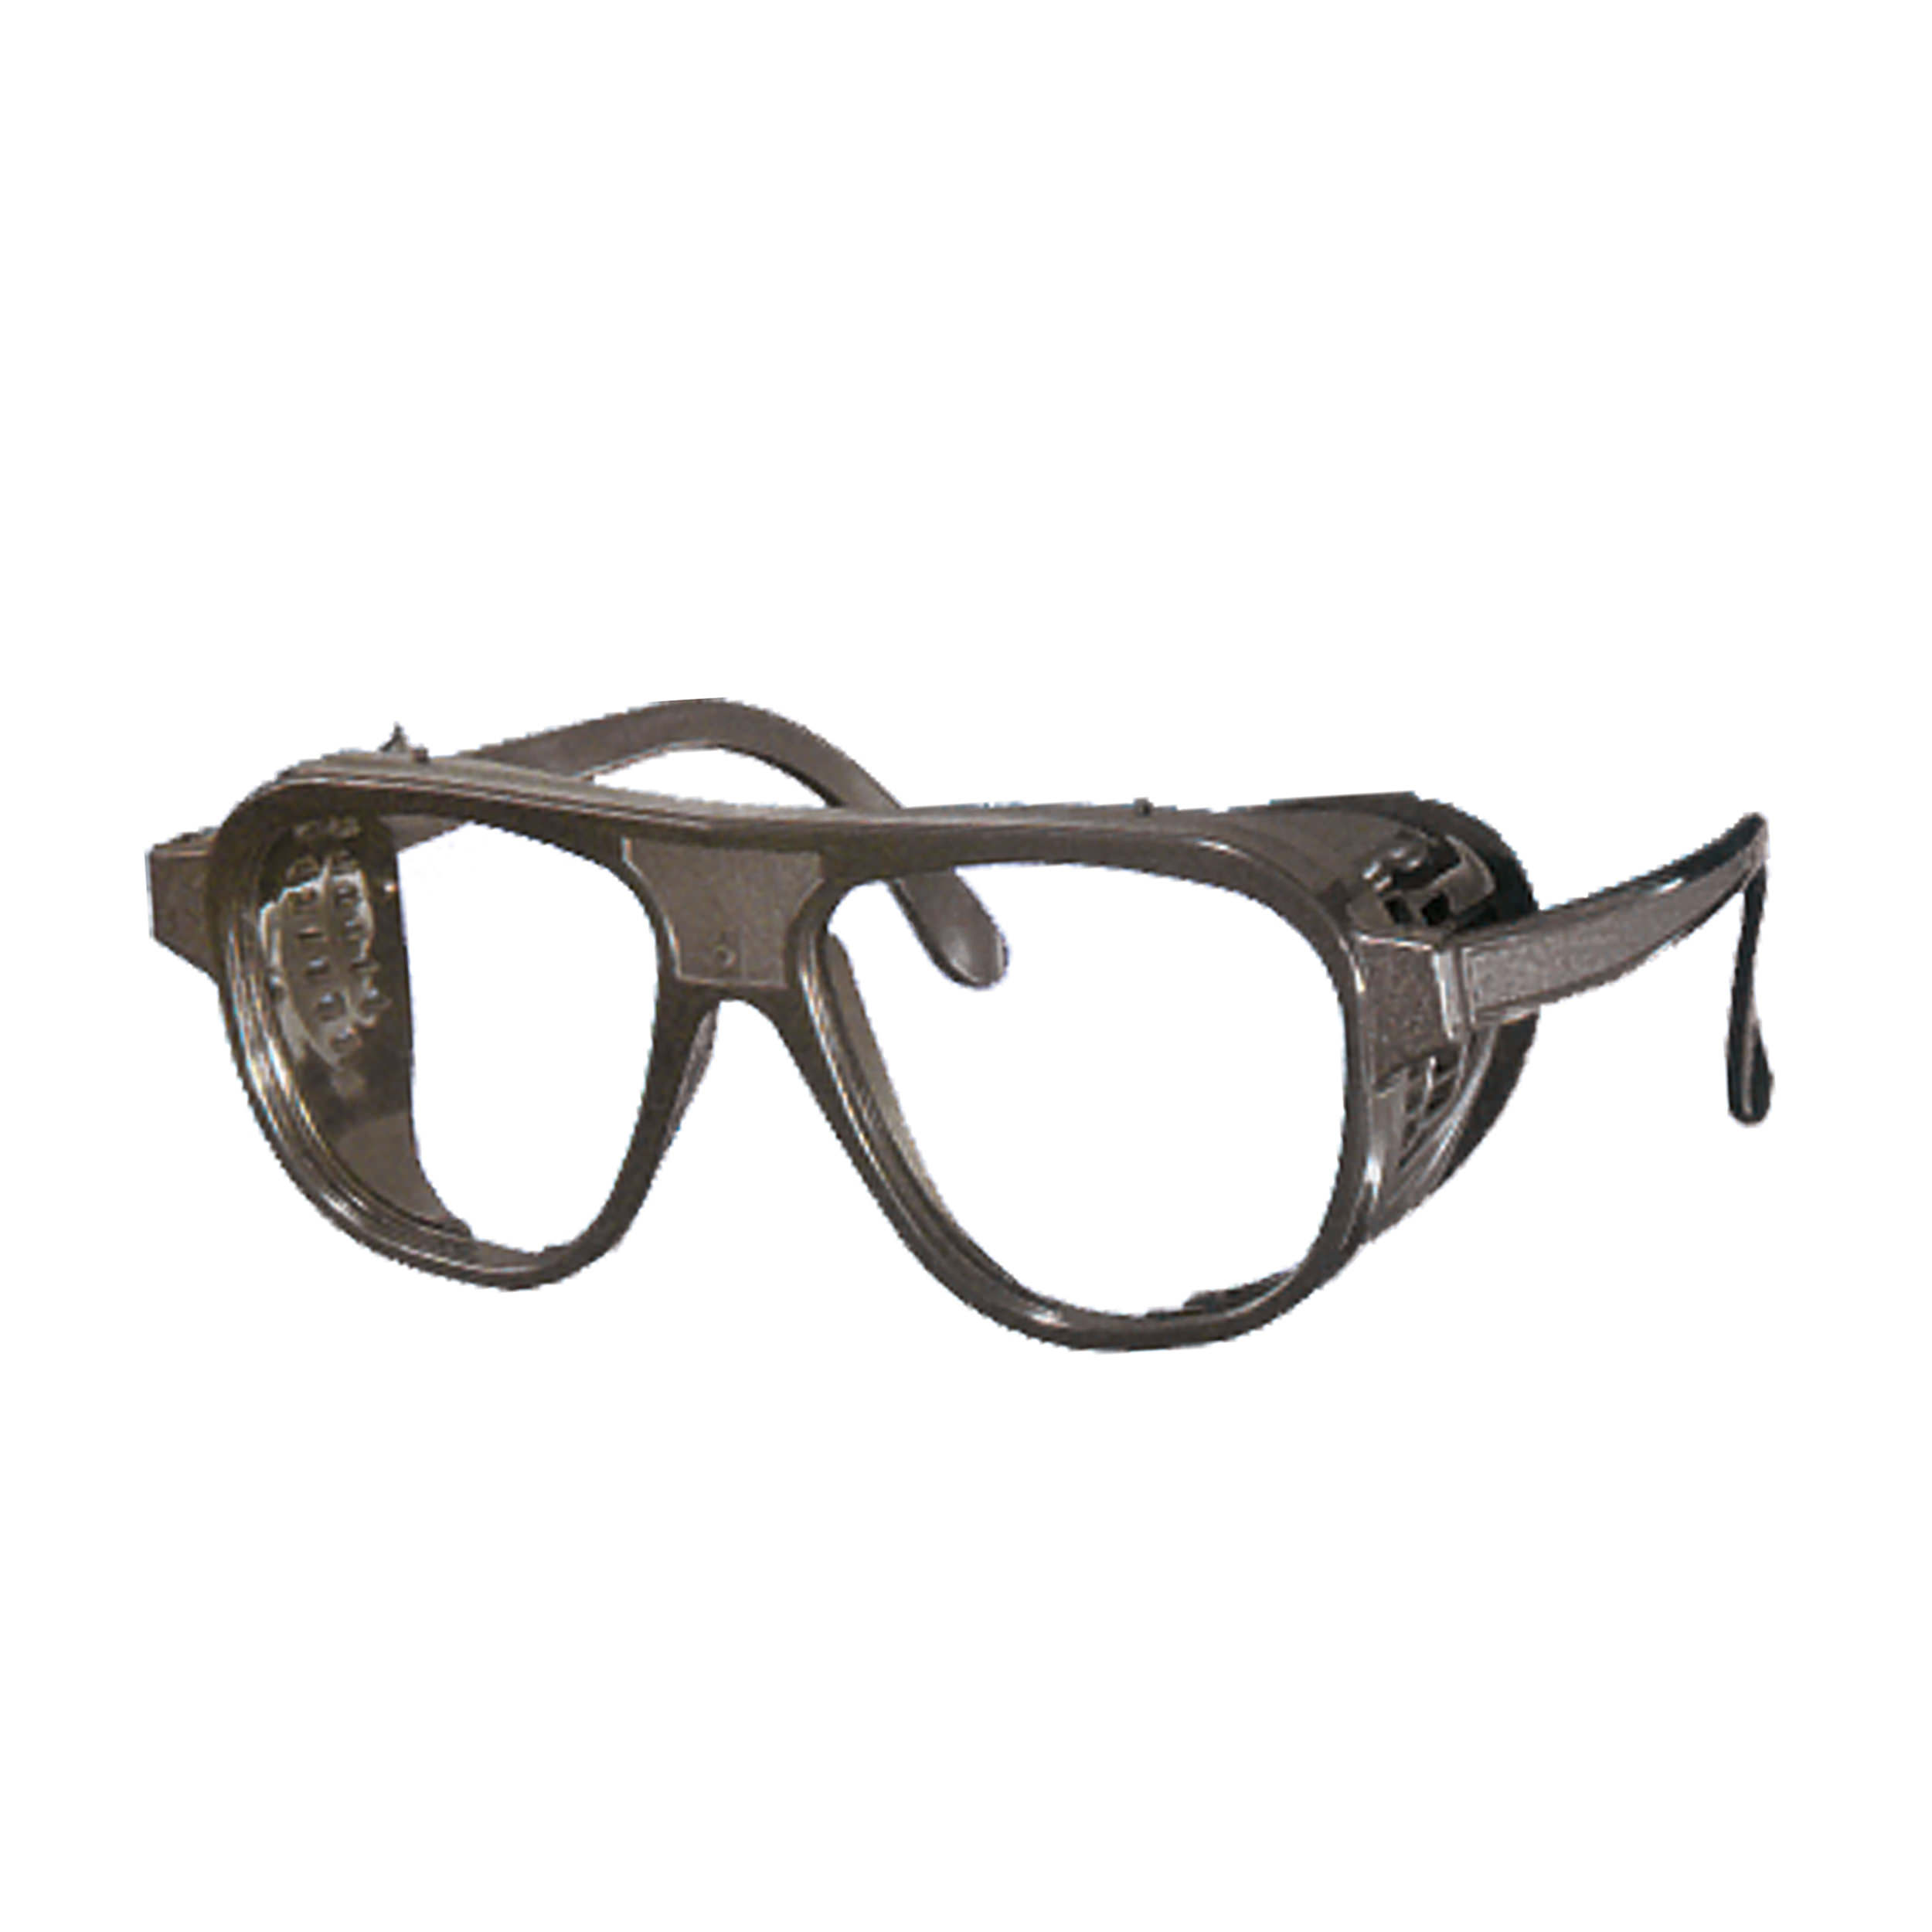 Nylonbrille, schwarz, ohne Bügelverstellung, mit Mittelschraube, Gläser oval 52x62mm, DIN 4